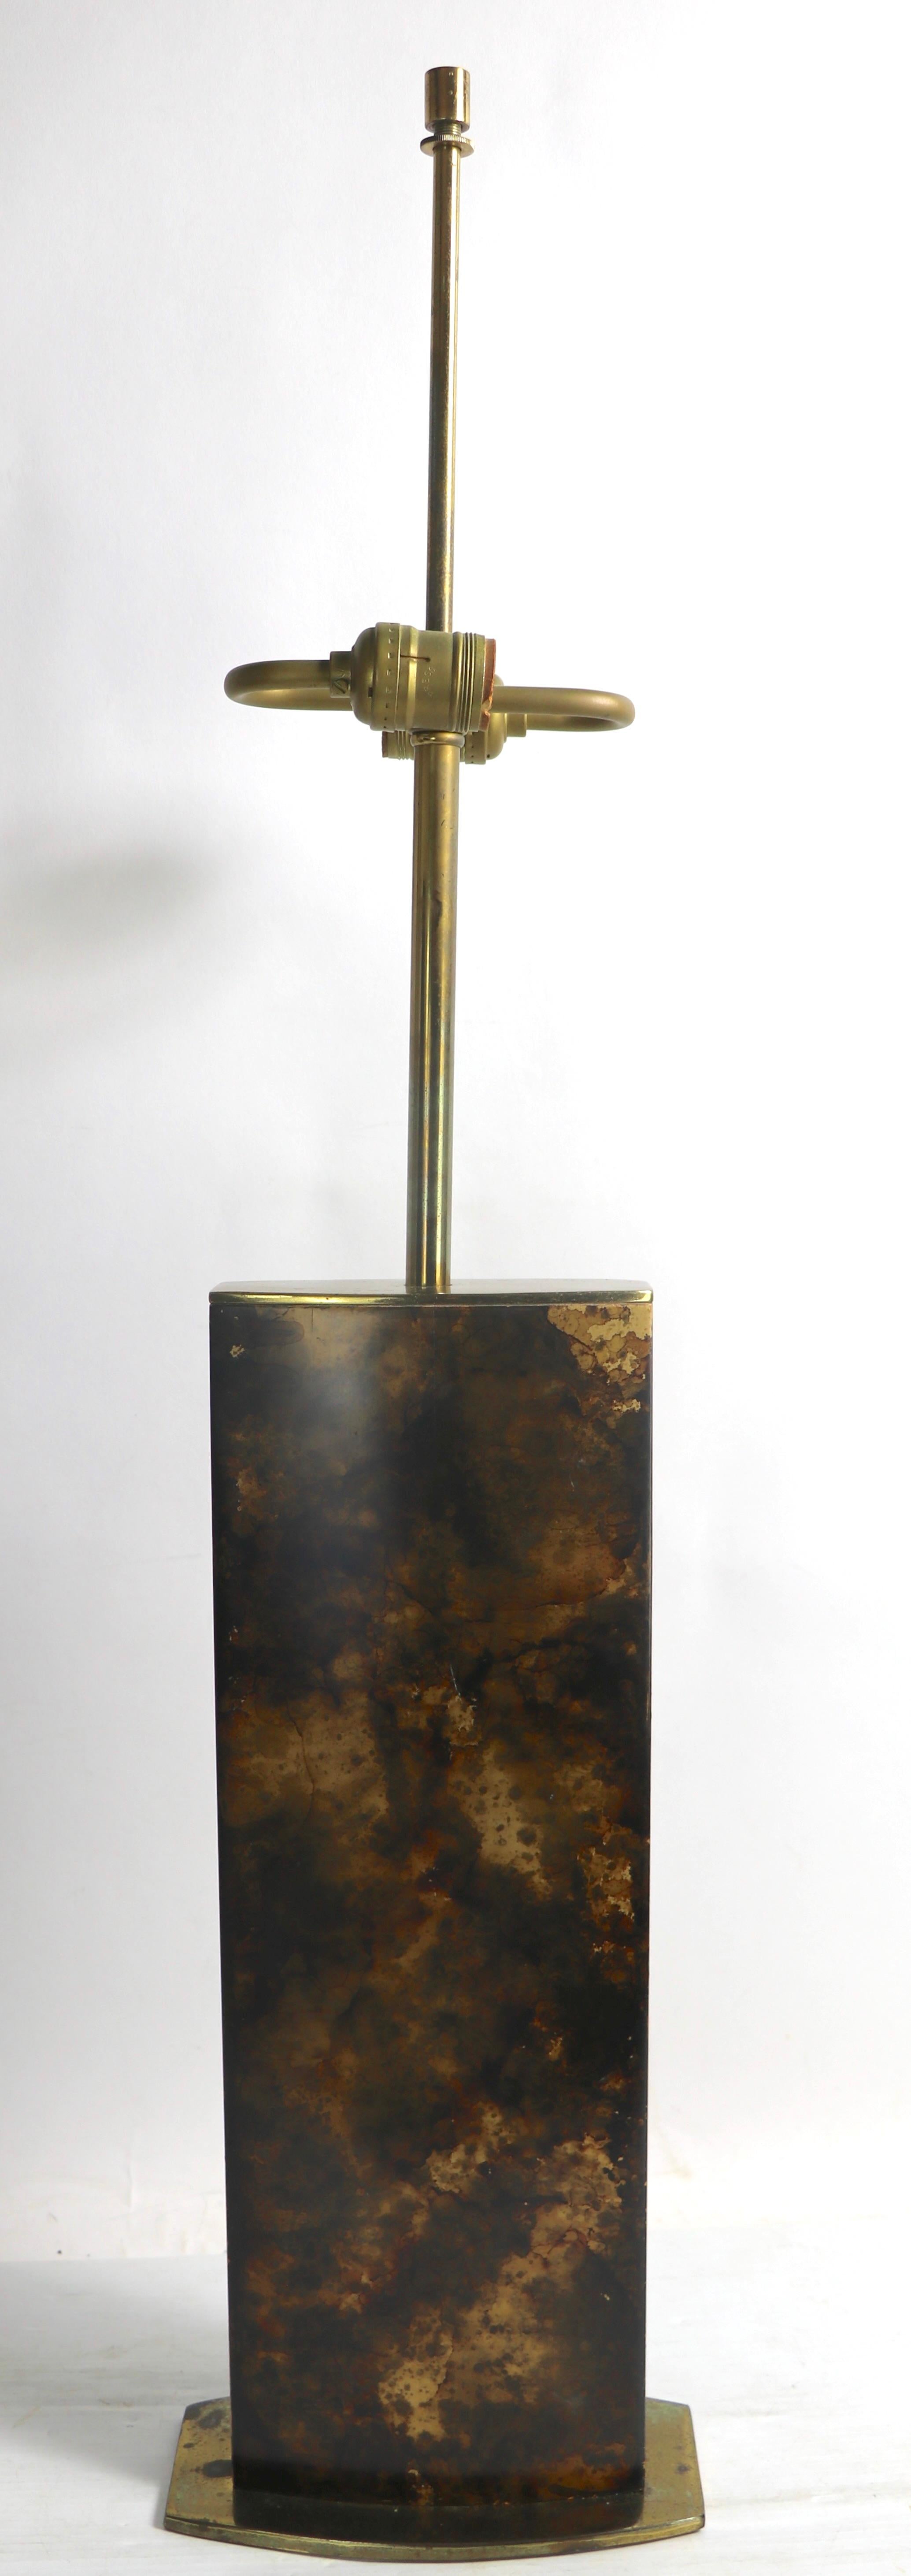 Lampe de table Voguish à finition en fausse coquille de tortue, fabriquée par le célèbre fabricant américain Mutual Sunset Lamp Manufacturing Company. La lampe est en bon état d'origine et de fonctionnement, propre et prête à l'emploi, abat-jour non